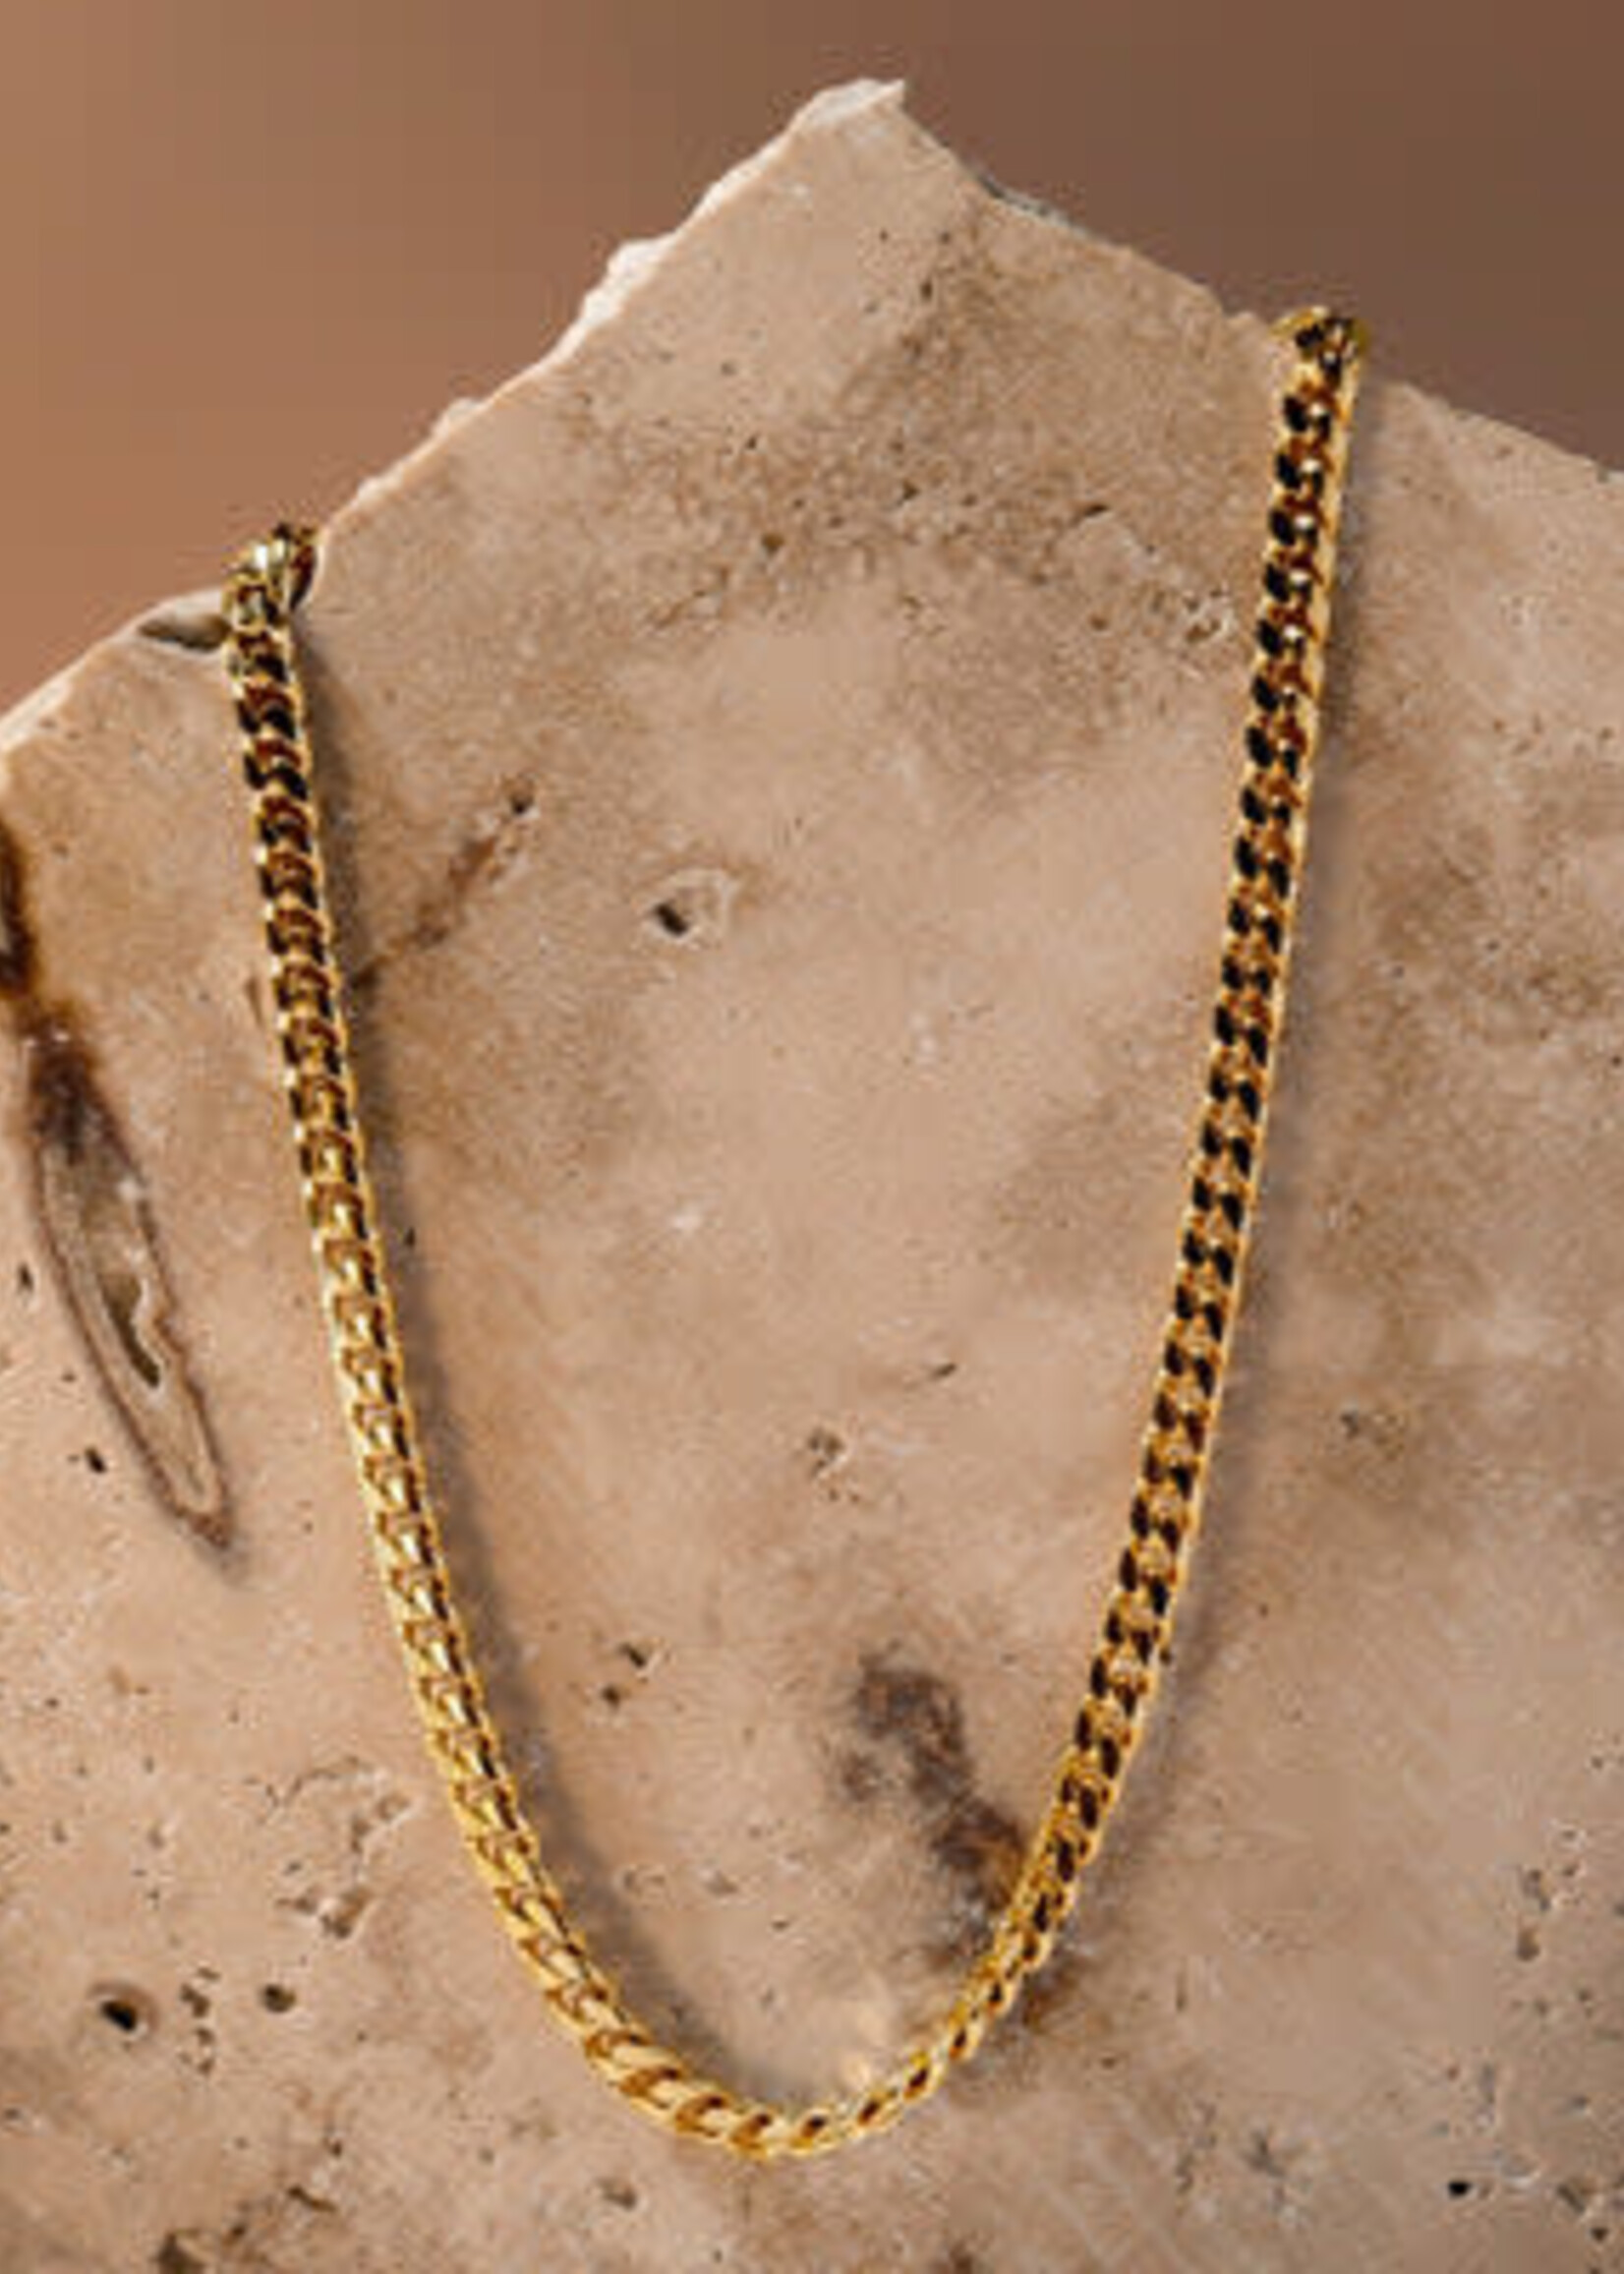 ATOLEA "Bonifacio" Necklace